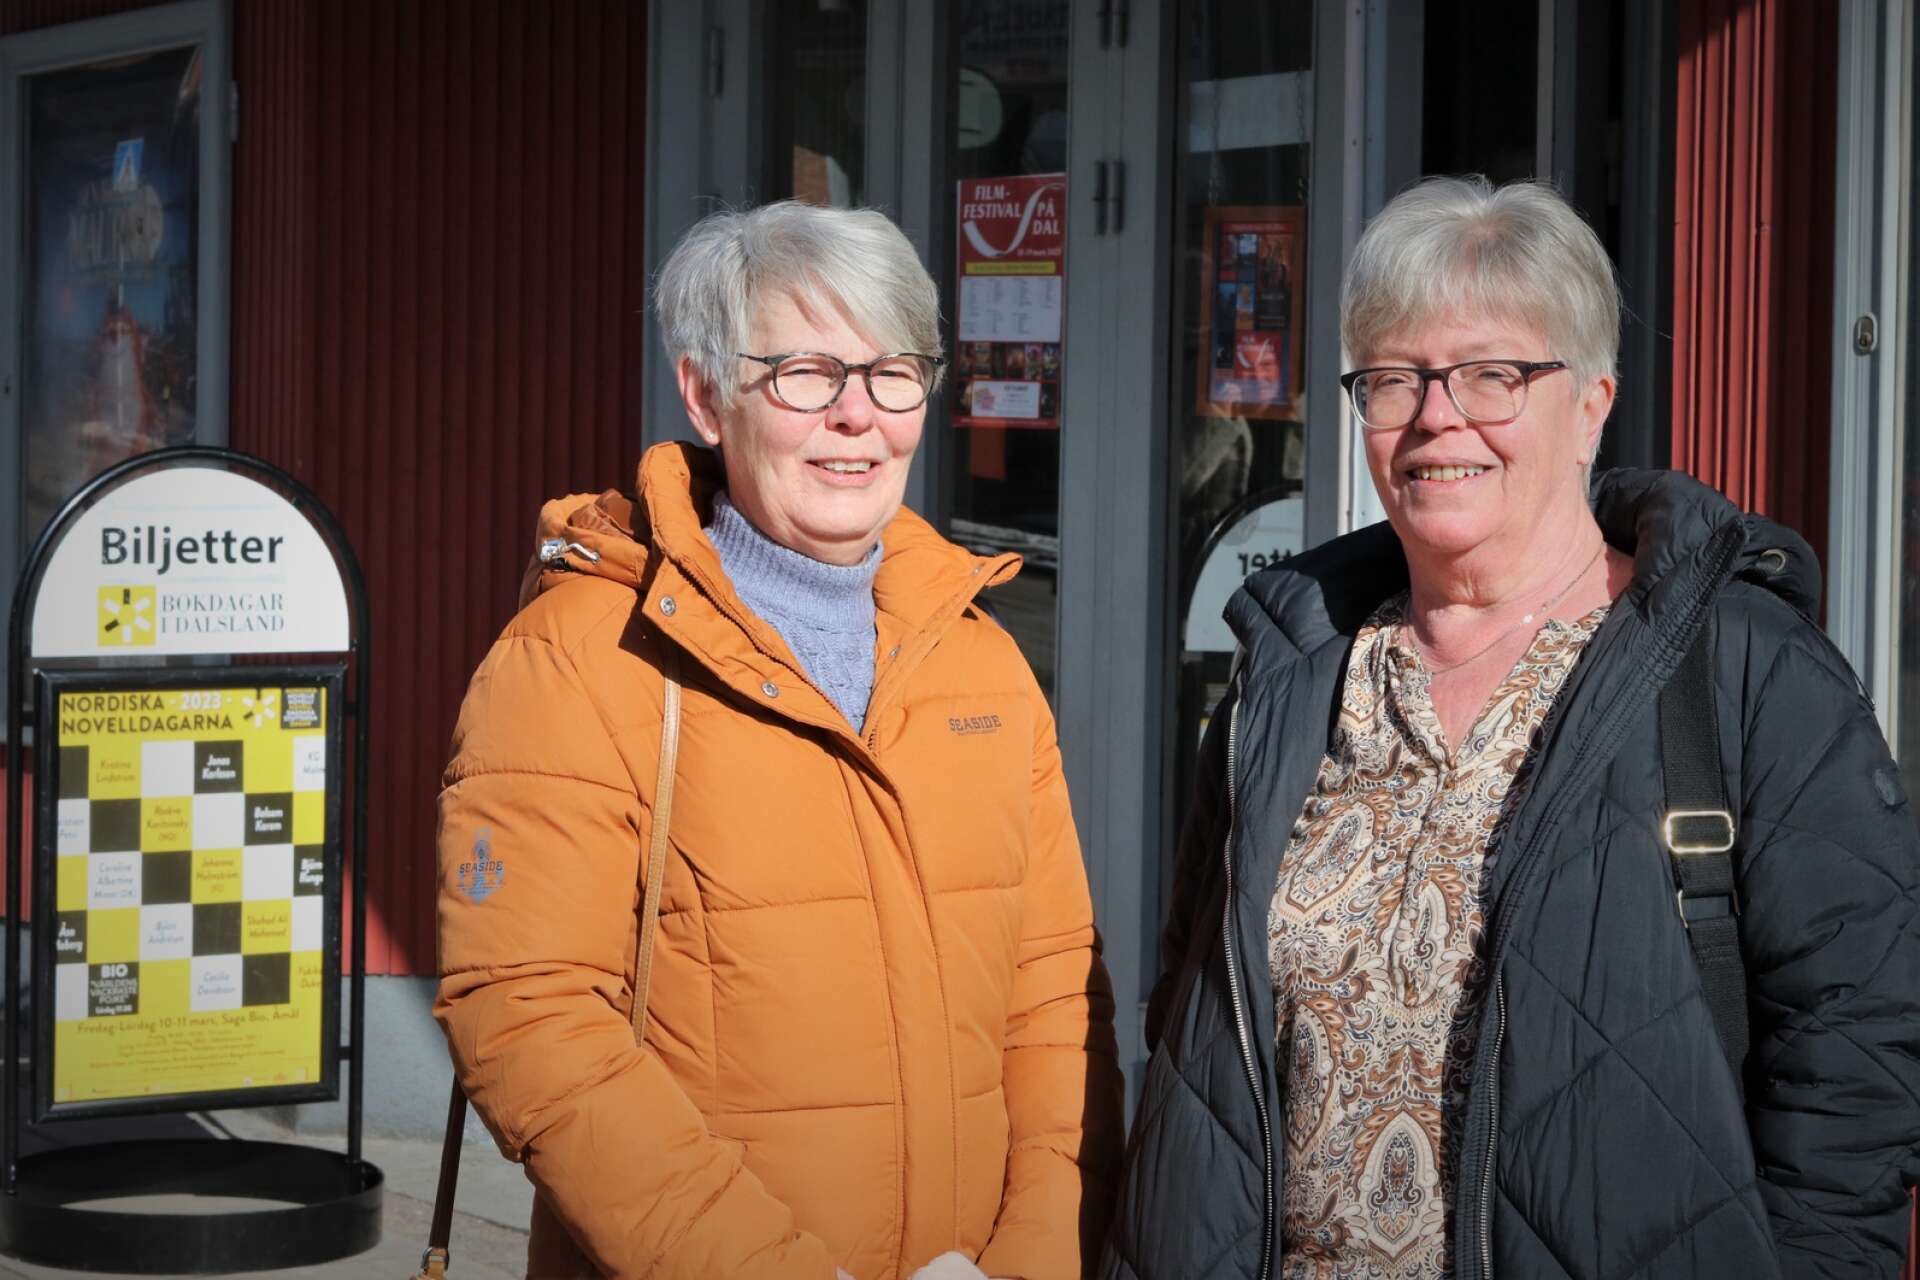 Vännerna Lena Schullström och Anna Hallberg såg fram emot att upptäcka nya författare under Nordiska novelldagarna.